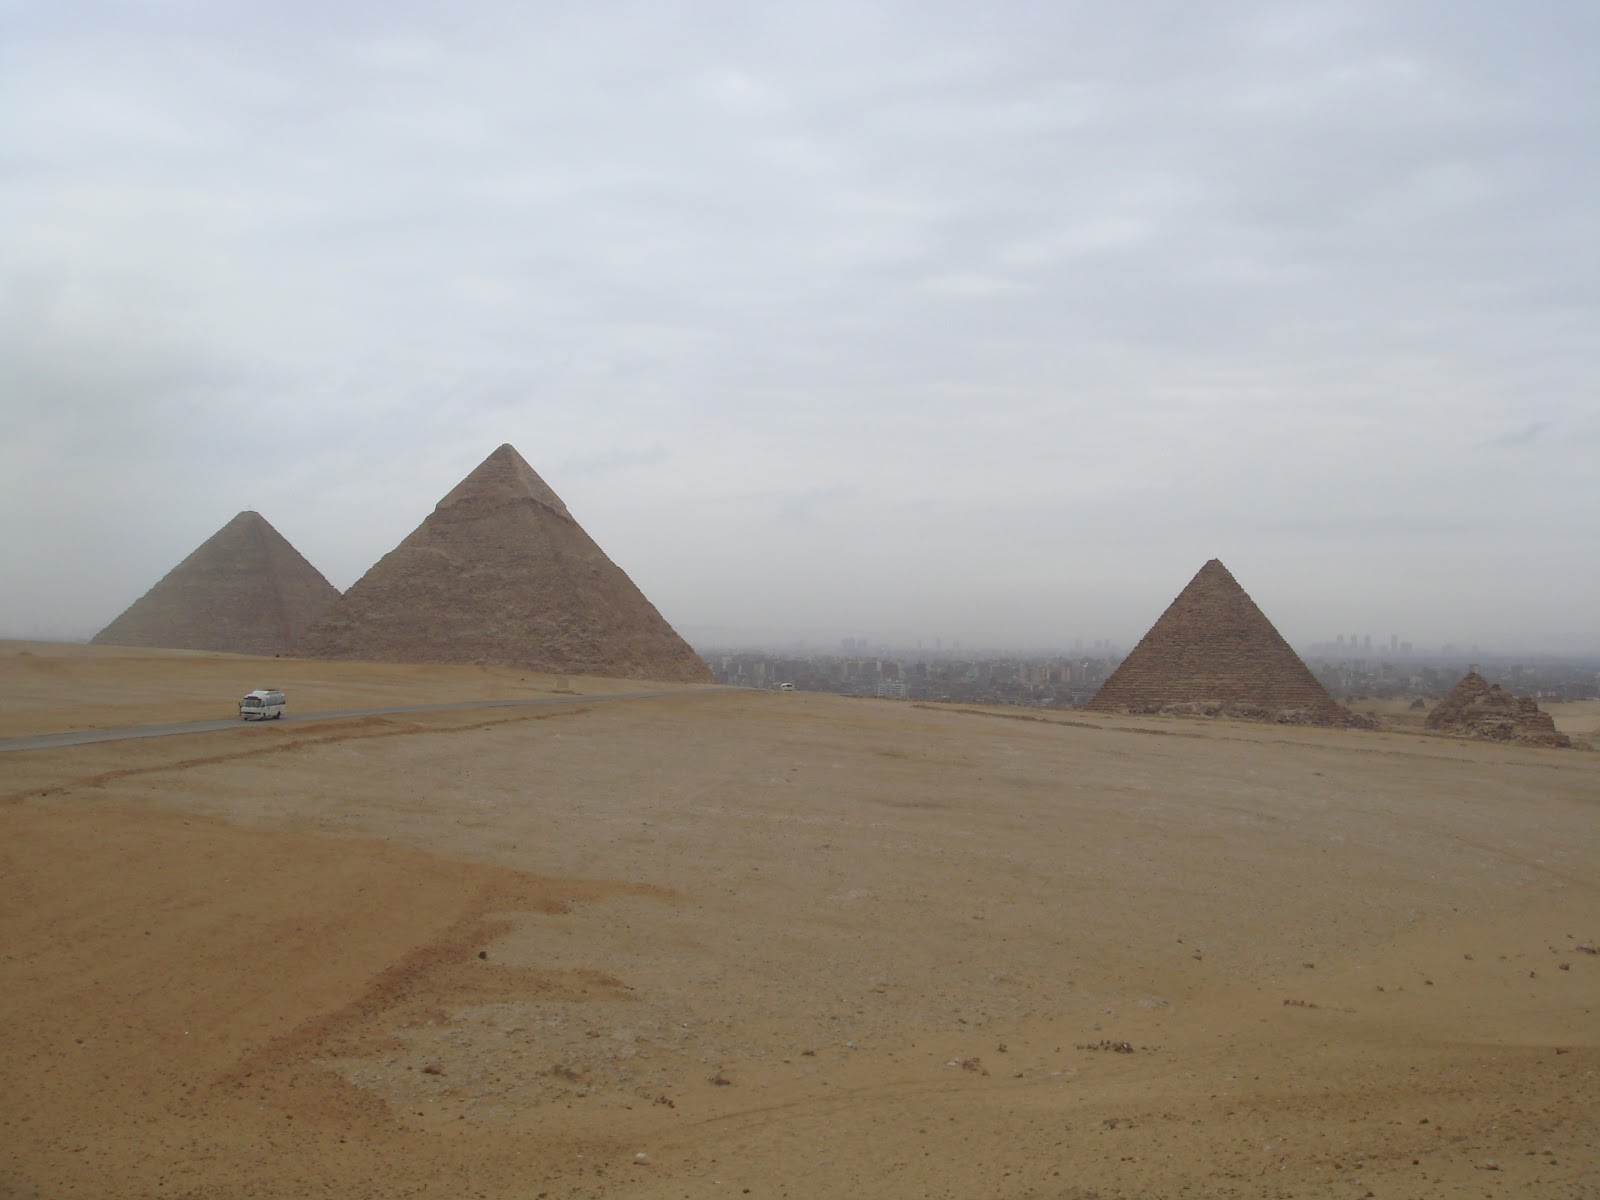 宏偉、壯觀、神秘！這三座屹立在高薩高地的金字塔可謂世界聞名，它們是法老王及貴族們的陵墓。  作為人類歷史上最偉大的建築物之一，金字塔的建造工藝特殊，形狀特異。最不可思議的是它們屹立在沙漠之中，幾千年也不會倒下，可想而知，當時的埃及建築師擁有著極高超的工藝水平：用超然的智慧和靈活地運用了浮力去建築而成，足以令世人折服。